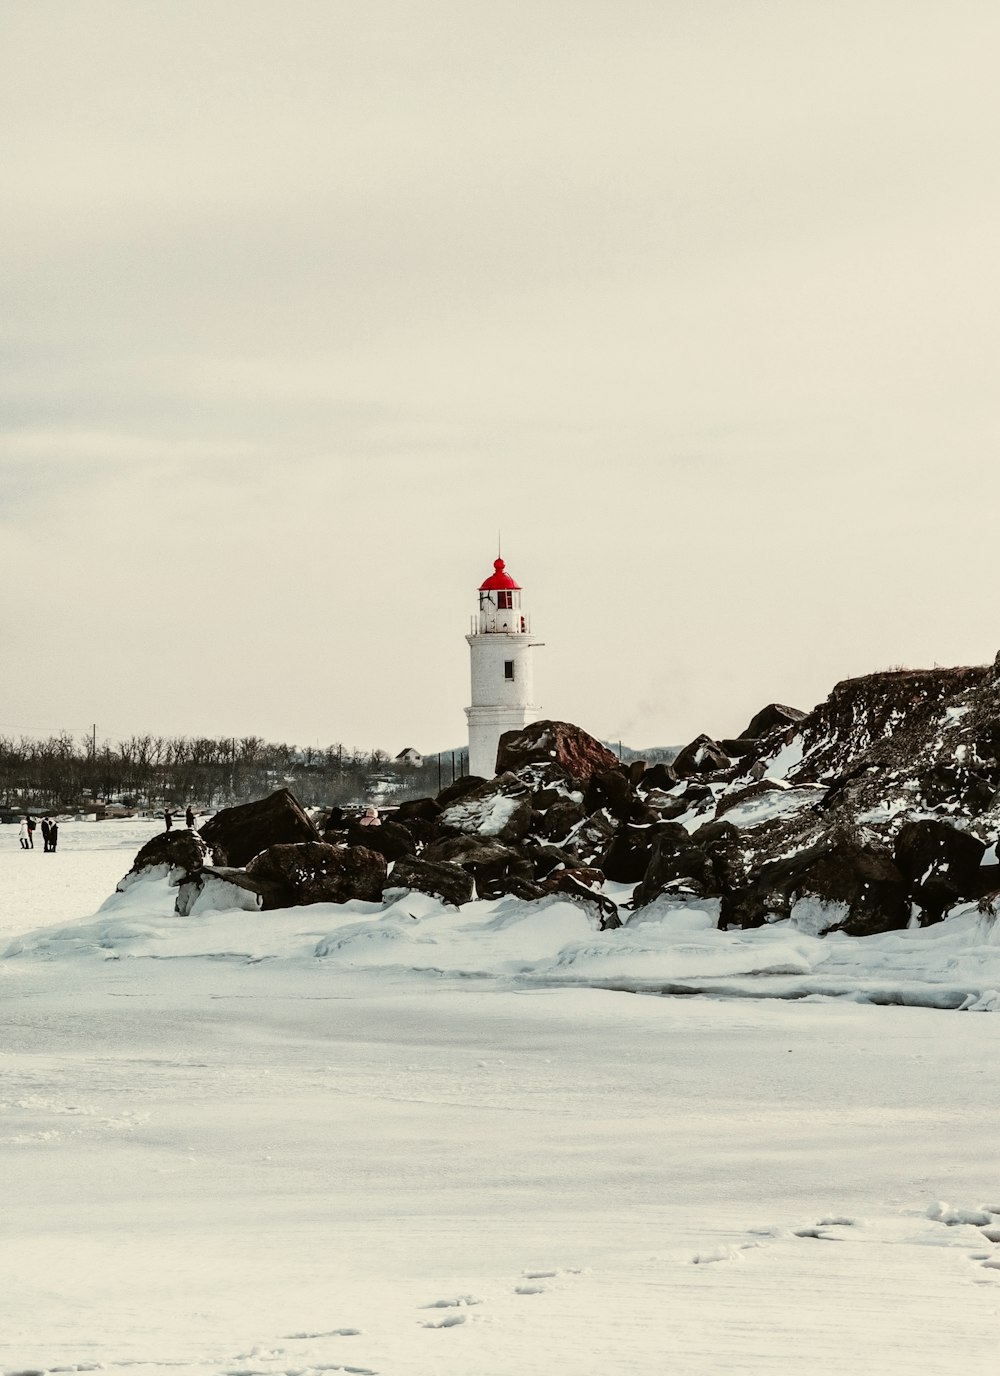 昼間の雪に覆われた地面に白い灯台